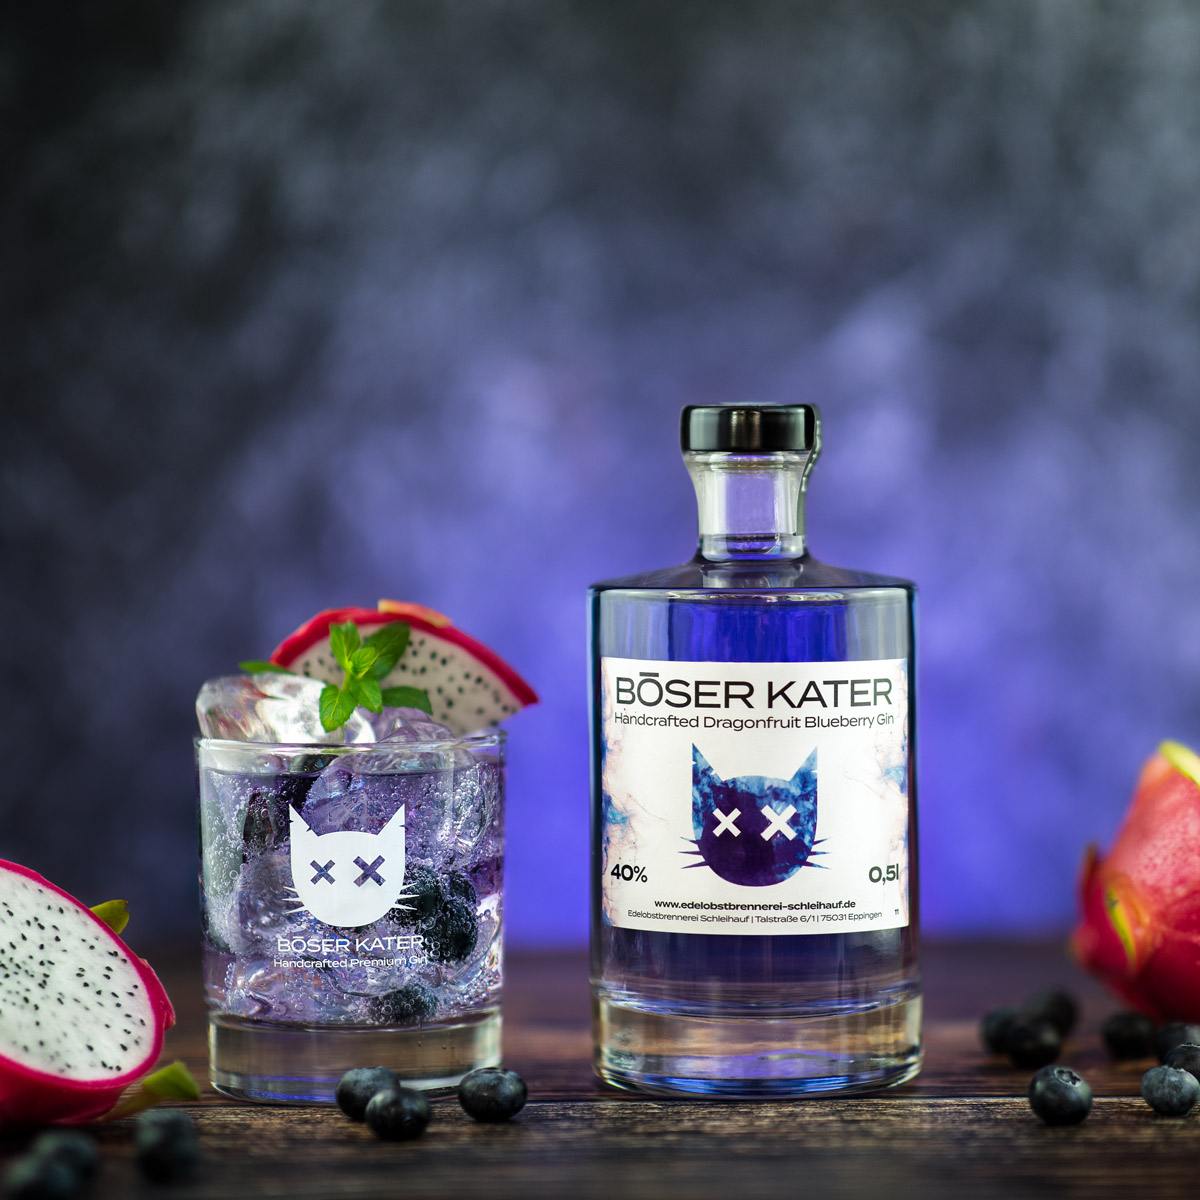 Böser Kater Handcrafted Dragonfruit Blueberry Gin 40% vol. 0,5l